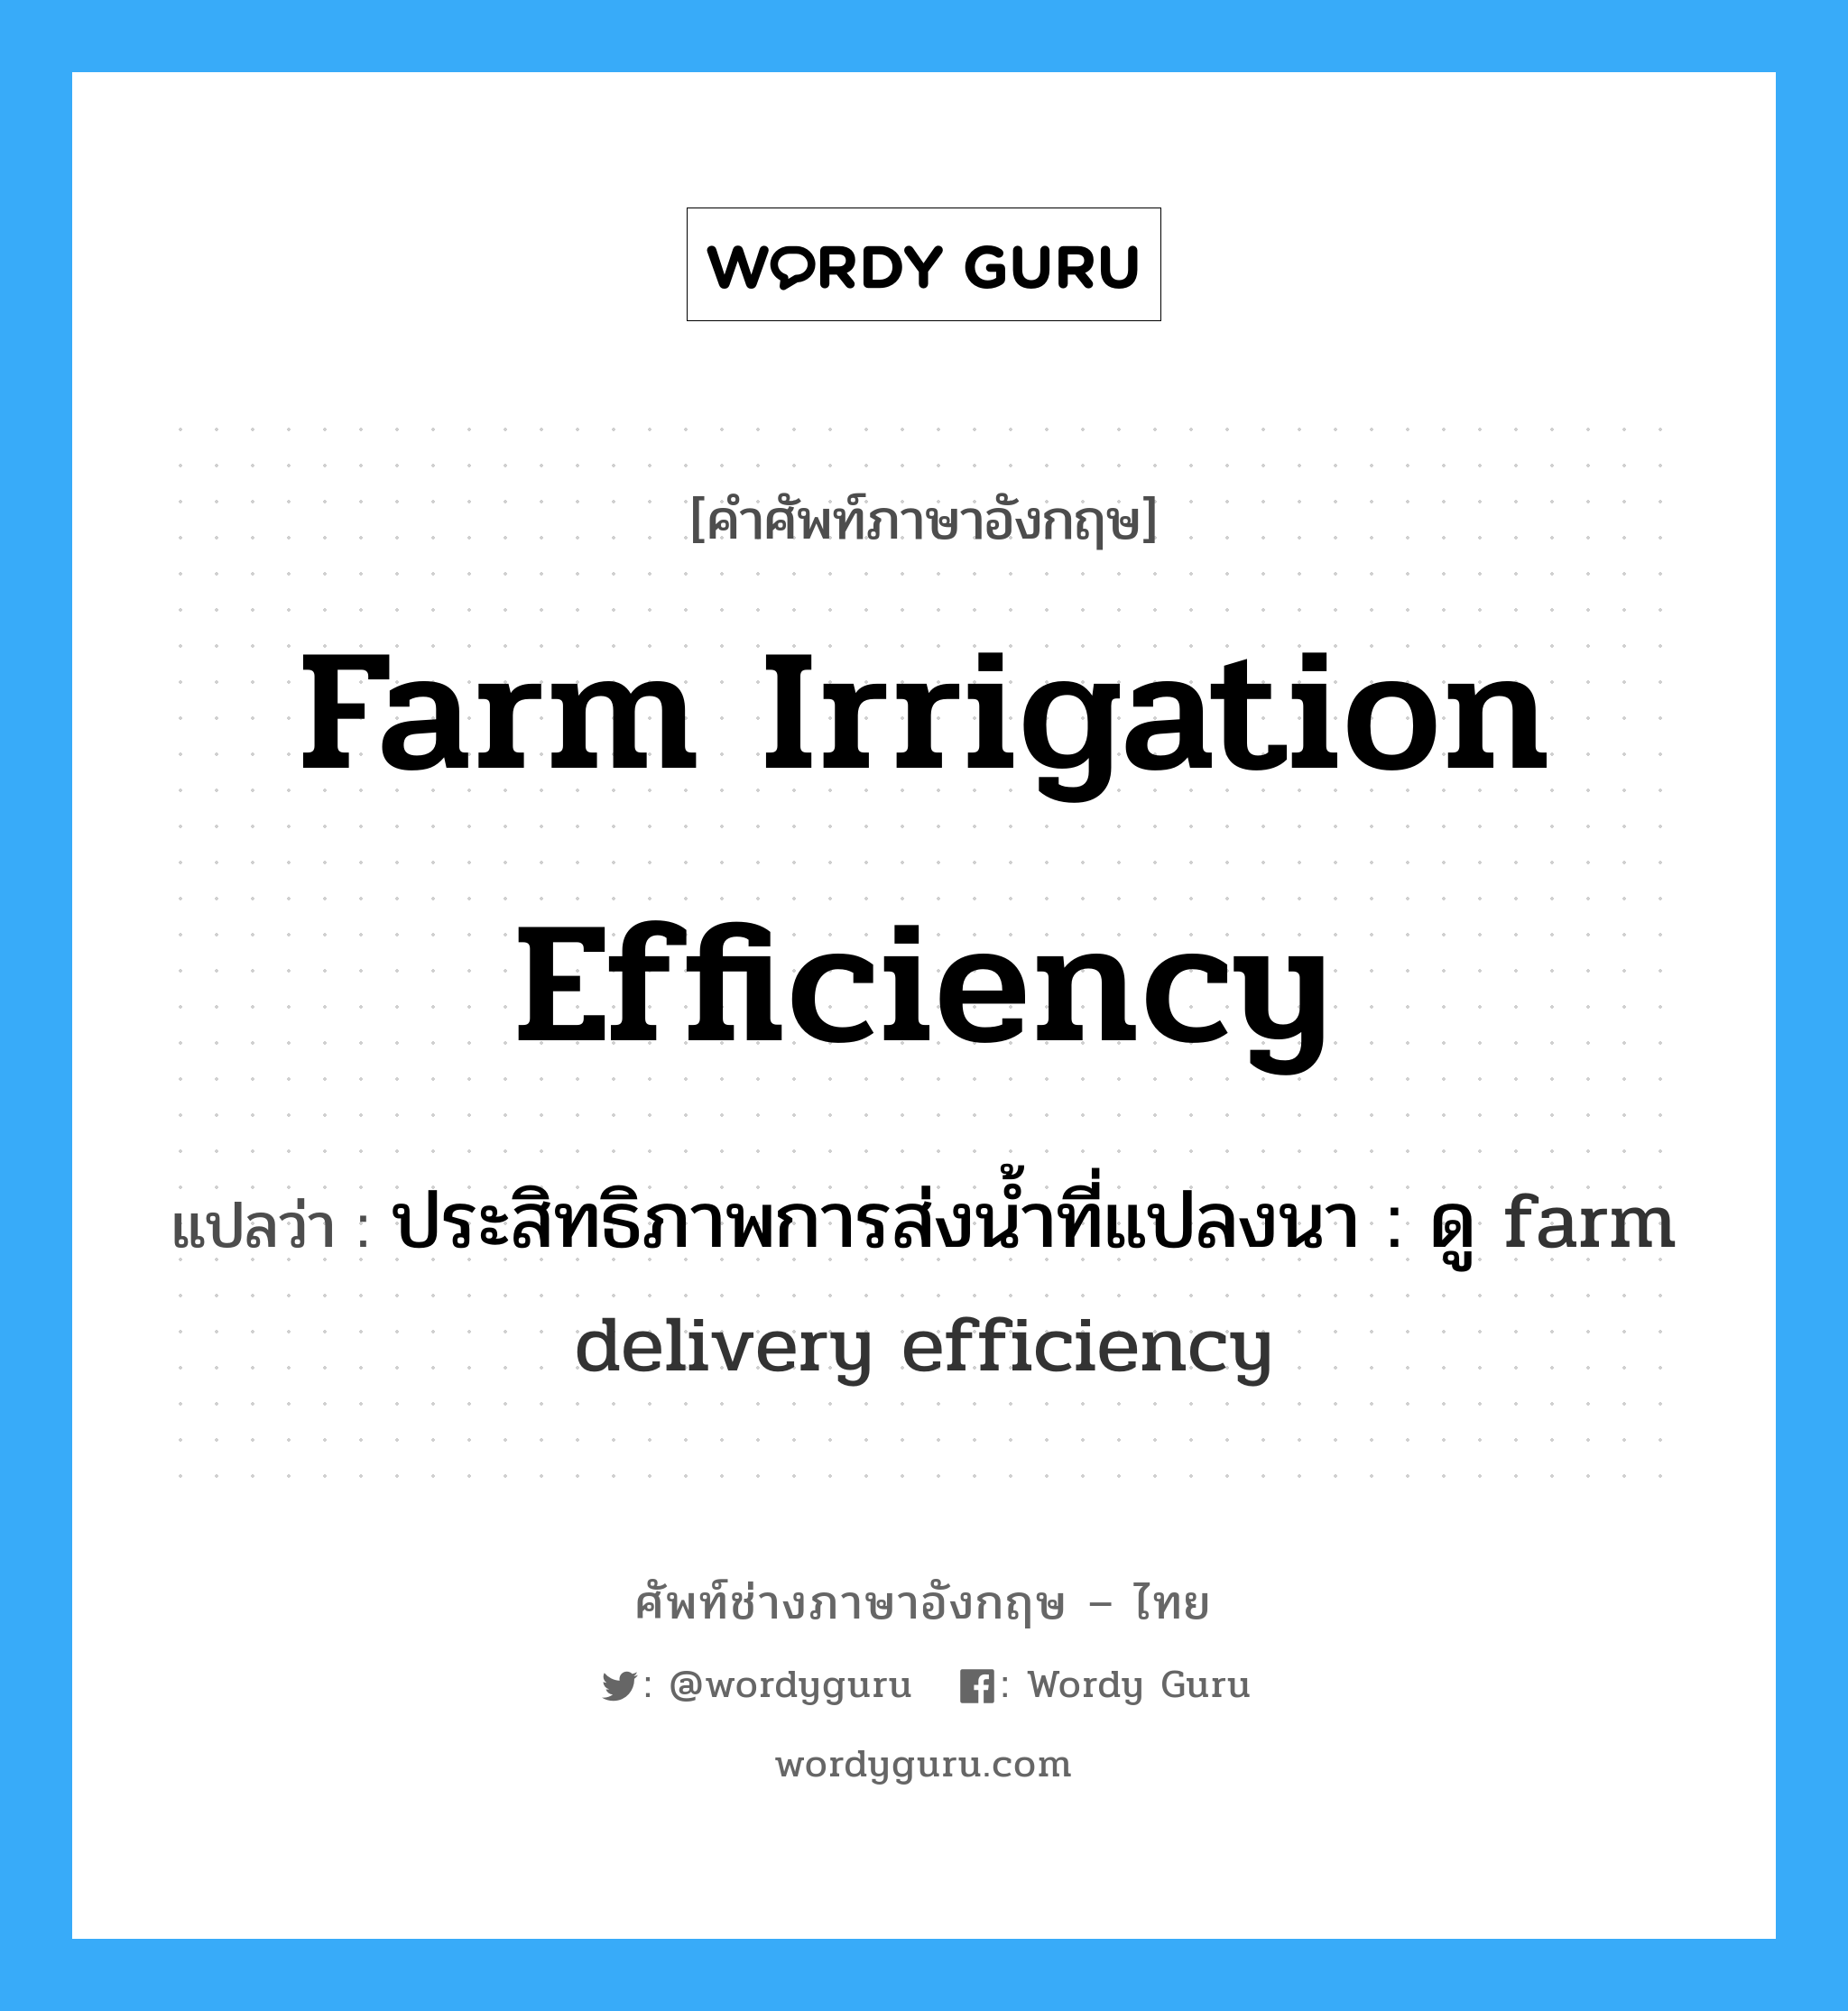 ประสิทธิภาพการส่งน้ำที่แปลงนา : ดู farm delivery efficiency ภาษาอังกฤษ?, คำศัพท์ช่างภาษาอังกฤษ - ไทย ประสิทธิภาพการส่งน้ำที่แปลงนา : ดู farm delivery efficiency คำศัพท์ภาษาอังกฤษ ประสิทธิภาพการส่งน้ำที่แปลงนา : ดู farm delivery efficiency แปลว่า farm irrigation efficiency